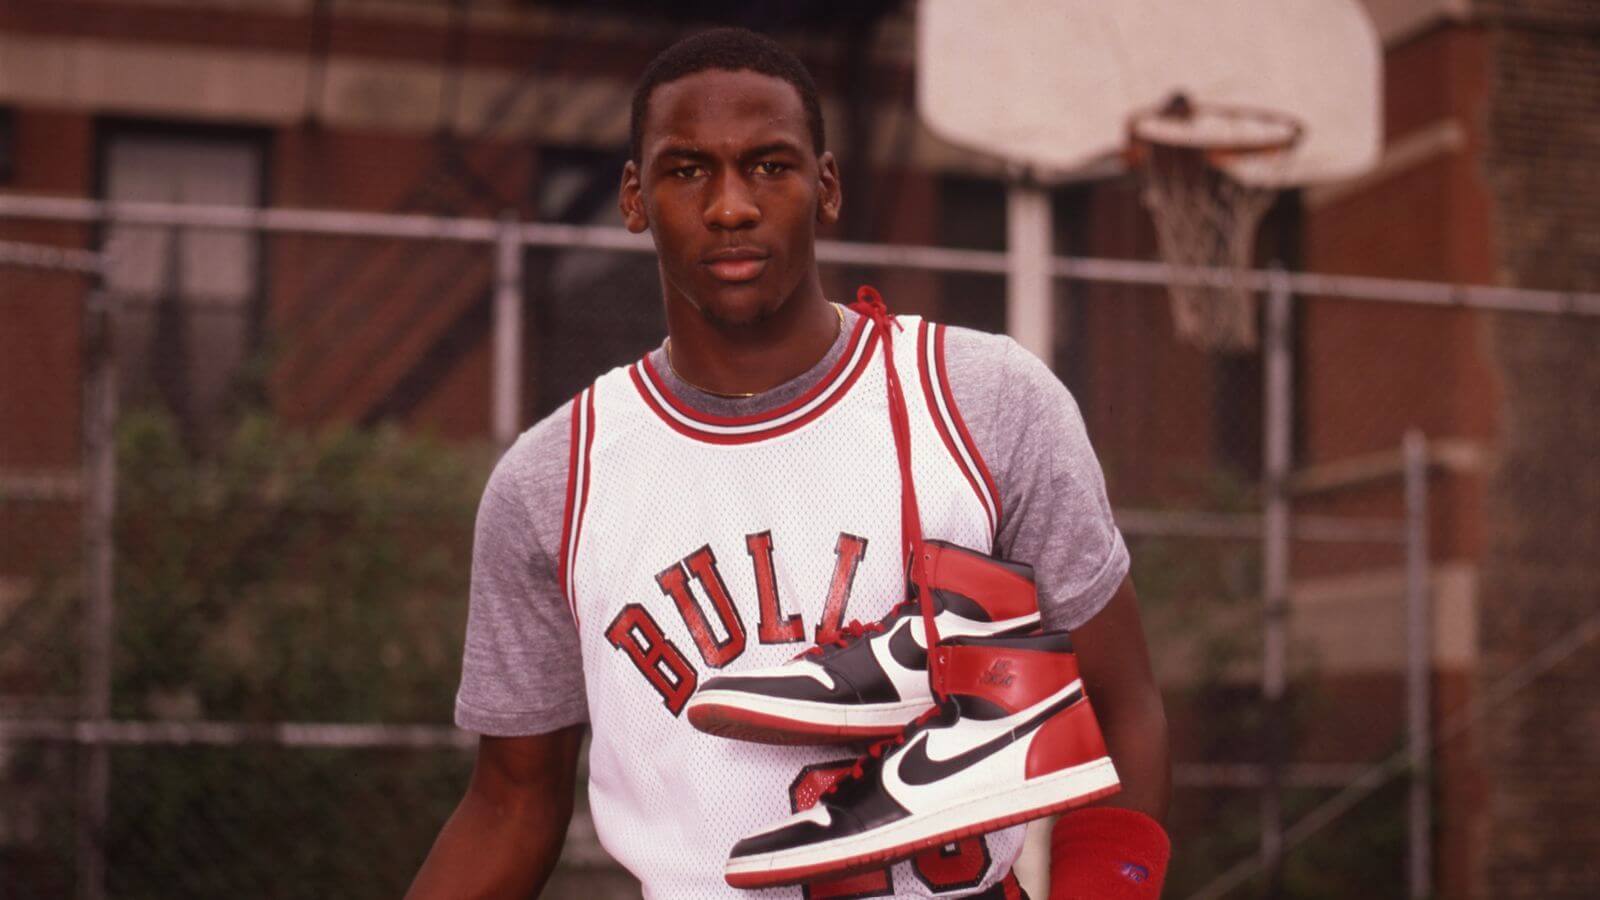 Michael Jordan - Air Jordan sneakers